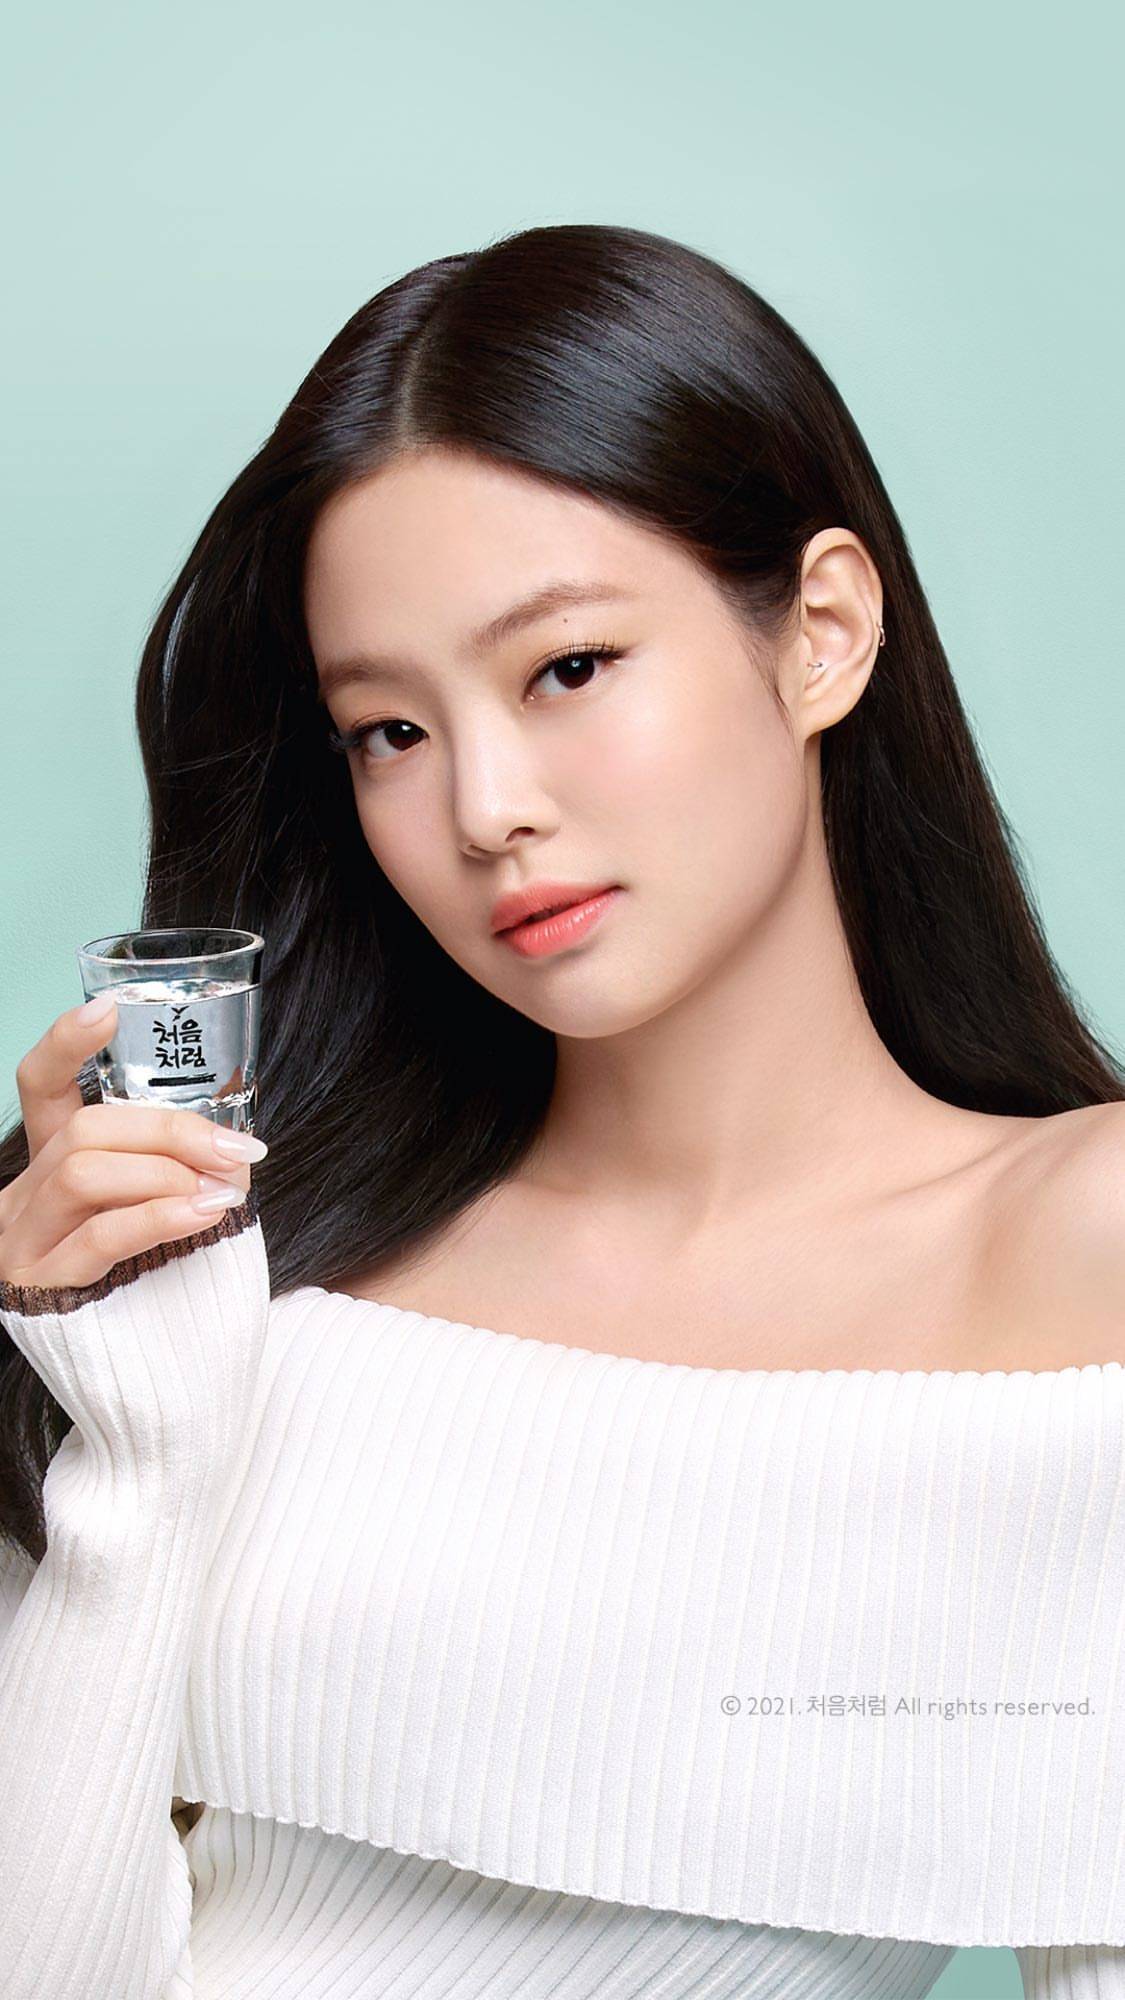 韩国女团blackpink成员jennie近日被某烧酒品牌选为了新的形象代言人